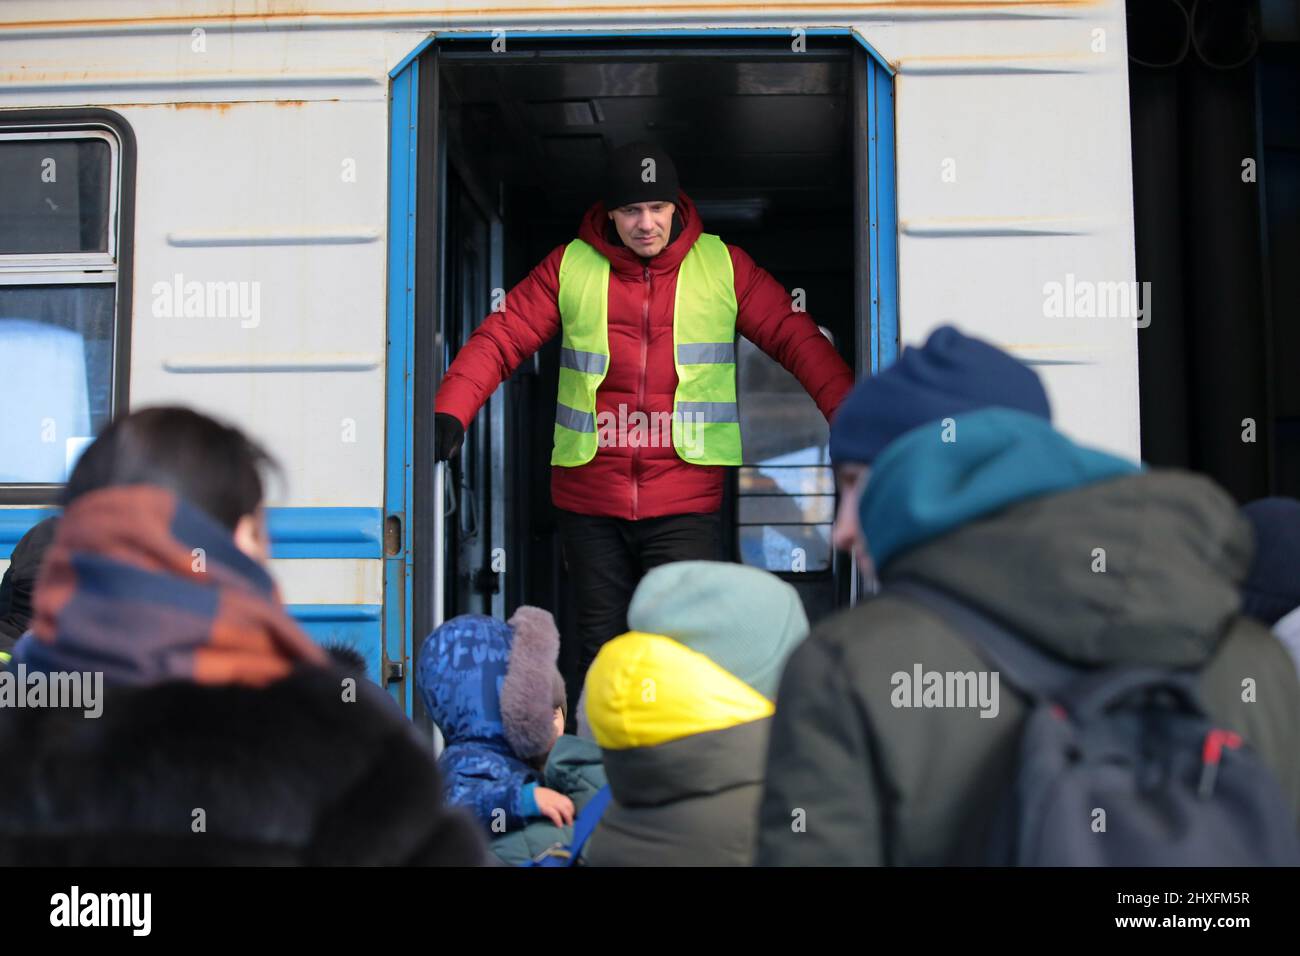 LVIV, UKRAINE - 11. MÄRZ 2022 - Ein Mann in einer High-viz-Jacke steht oben auf der Treppe eines Kutschenmädchen als Menschen, die vor der russischen Invasion fliehen Stockfoto